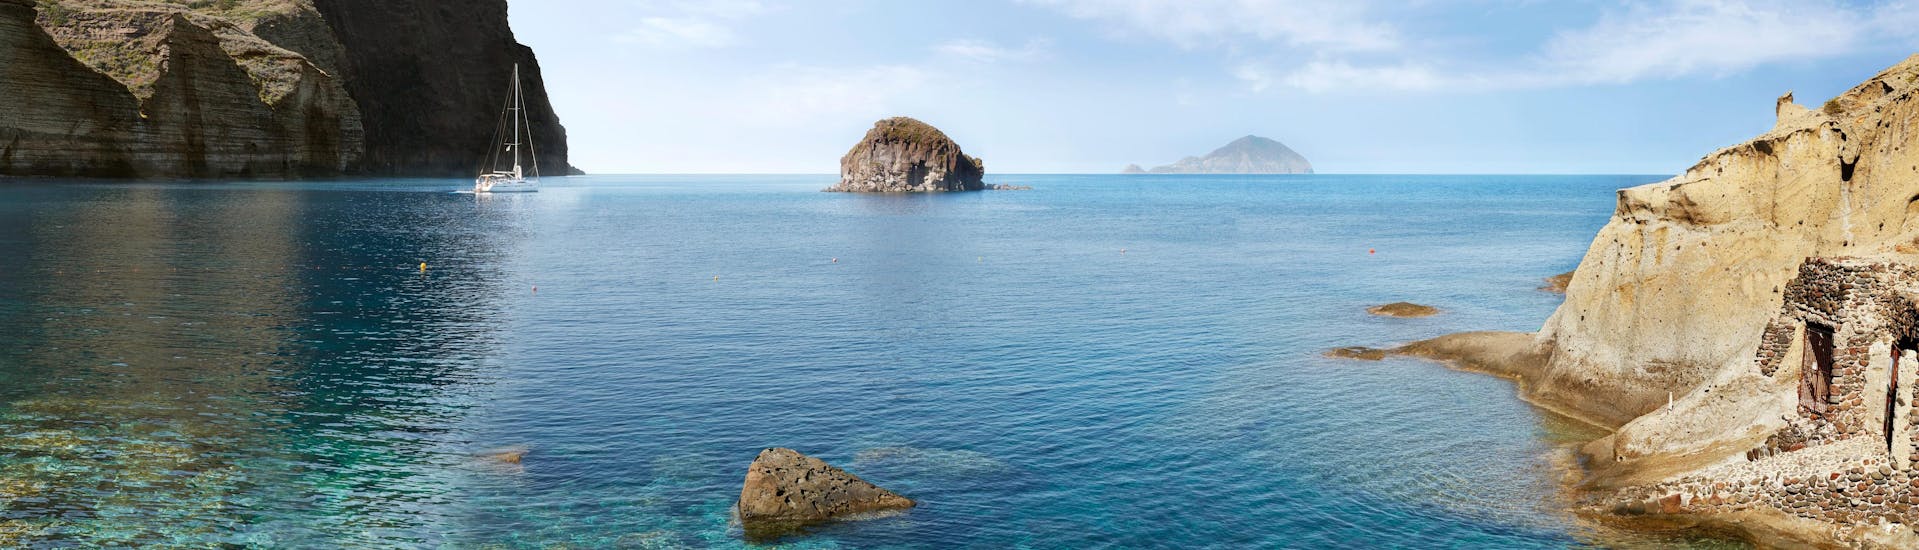 Vue sur la magnifique plage de Pollara, que vous pouvez visiter lors d'une balade en bateau jusqu'à l'île de Salina.